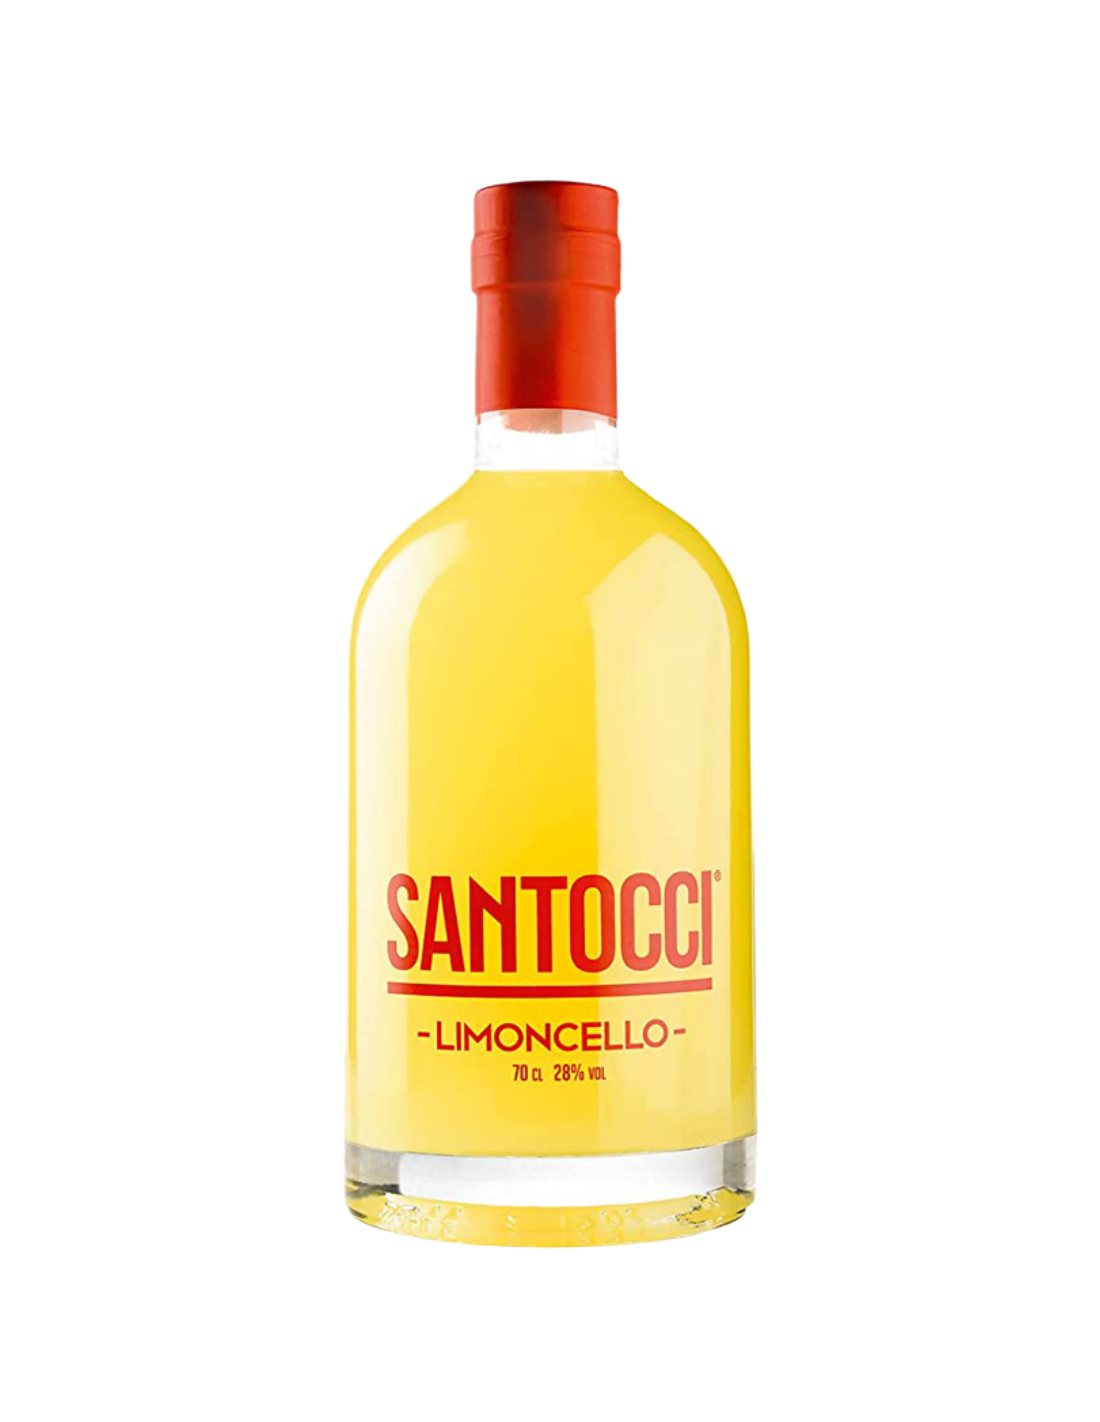 Lichior Santocci Limoncello, 28% alc., 0.7L, Italia alcooldiscount.ro